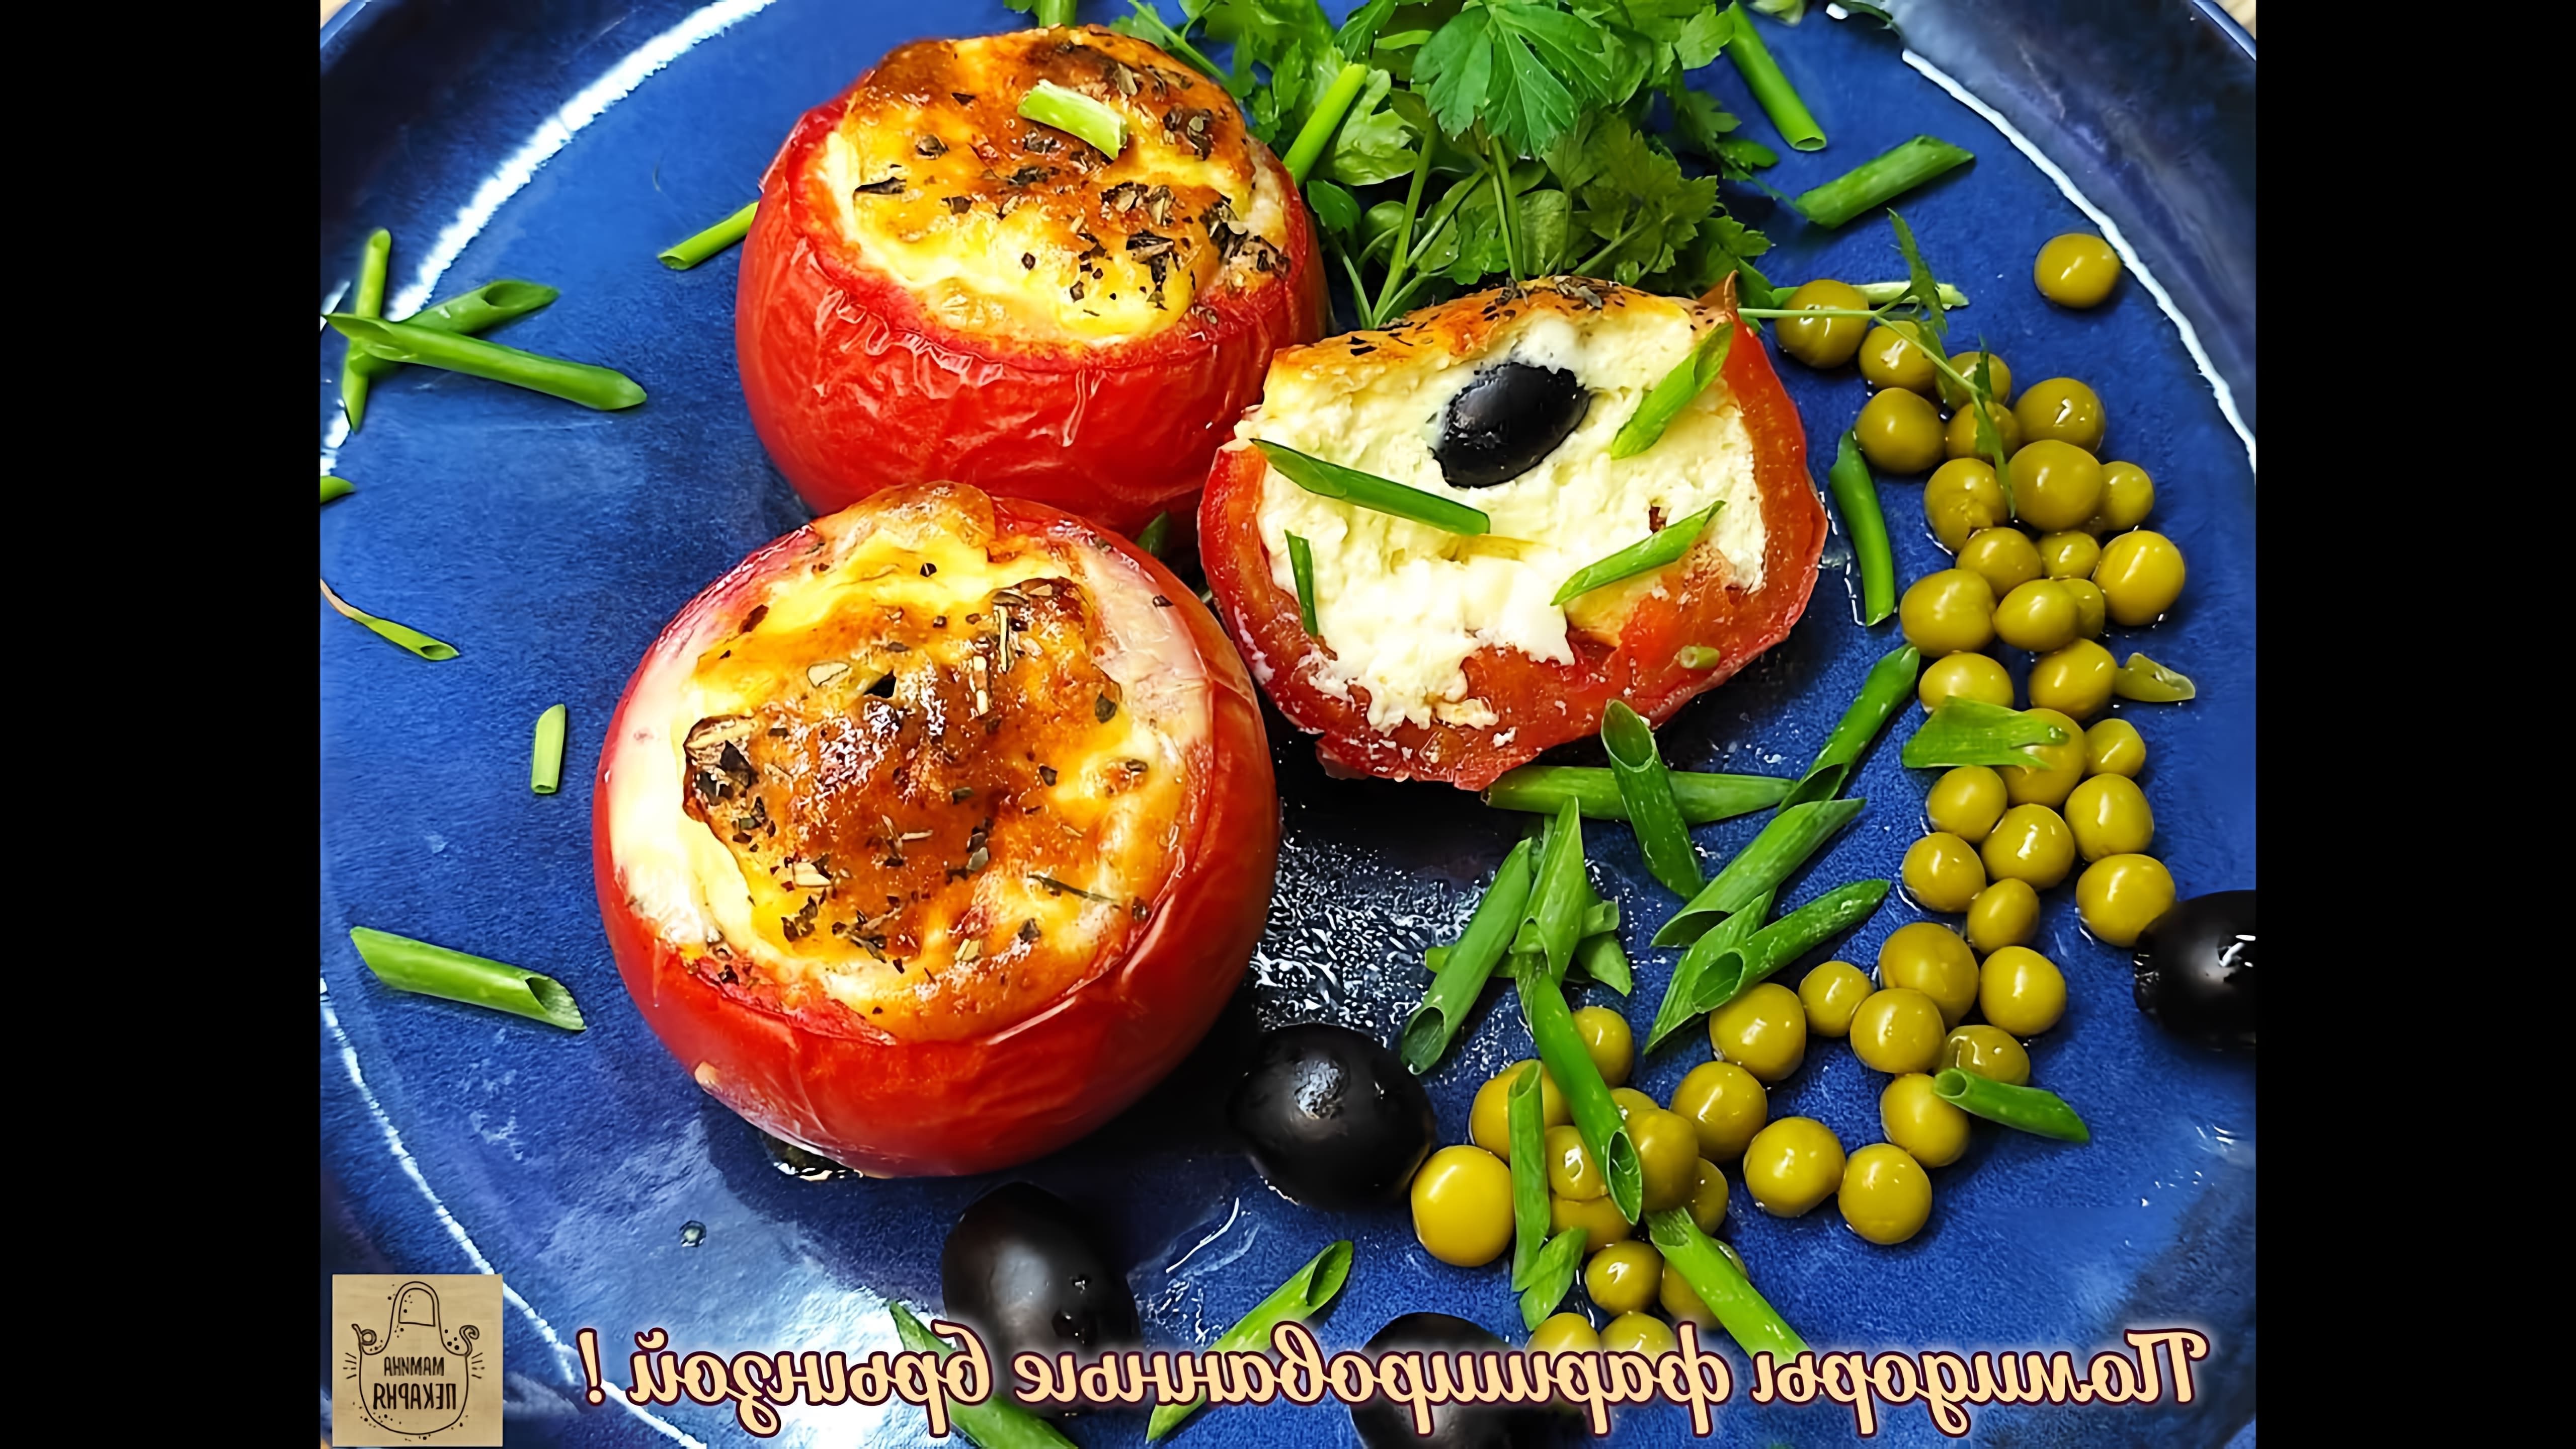 В этом видео показан простой рецепт фаршированных помидоров с брынзой